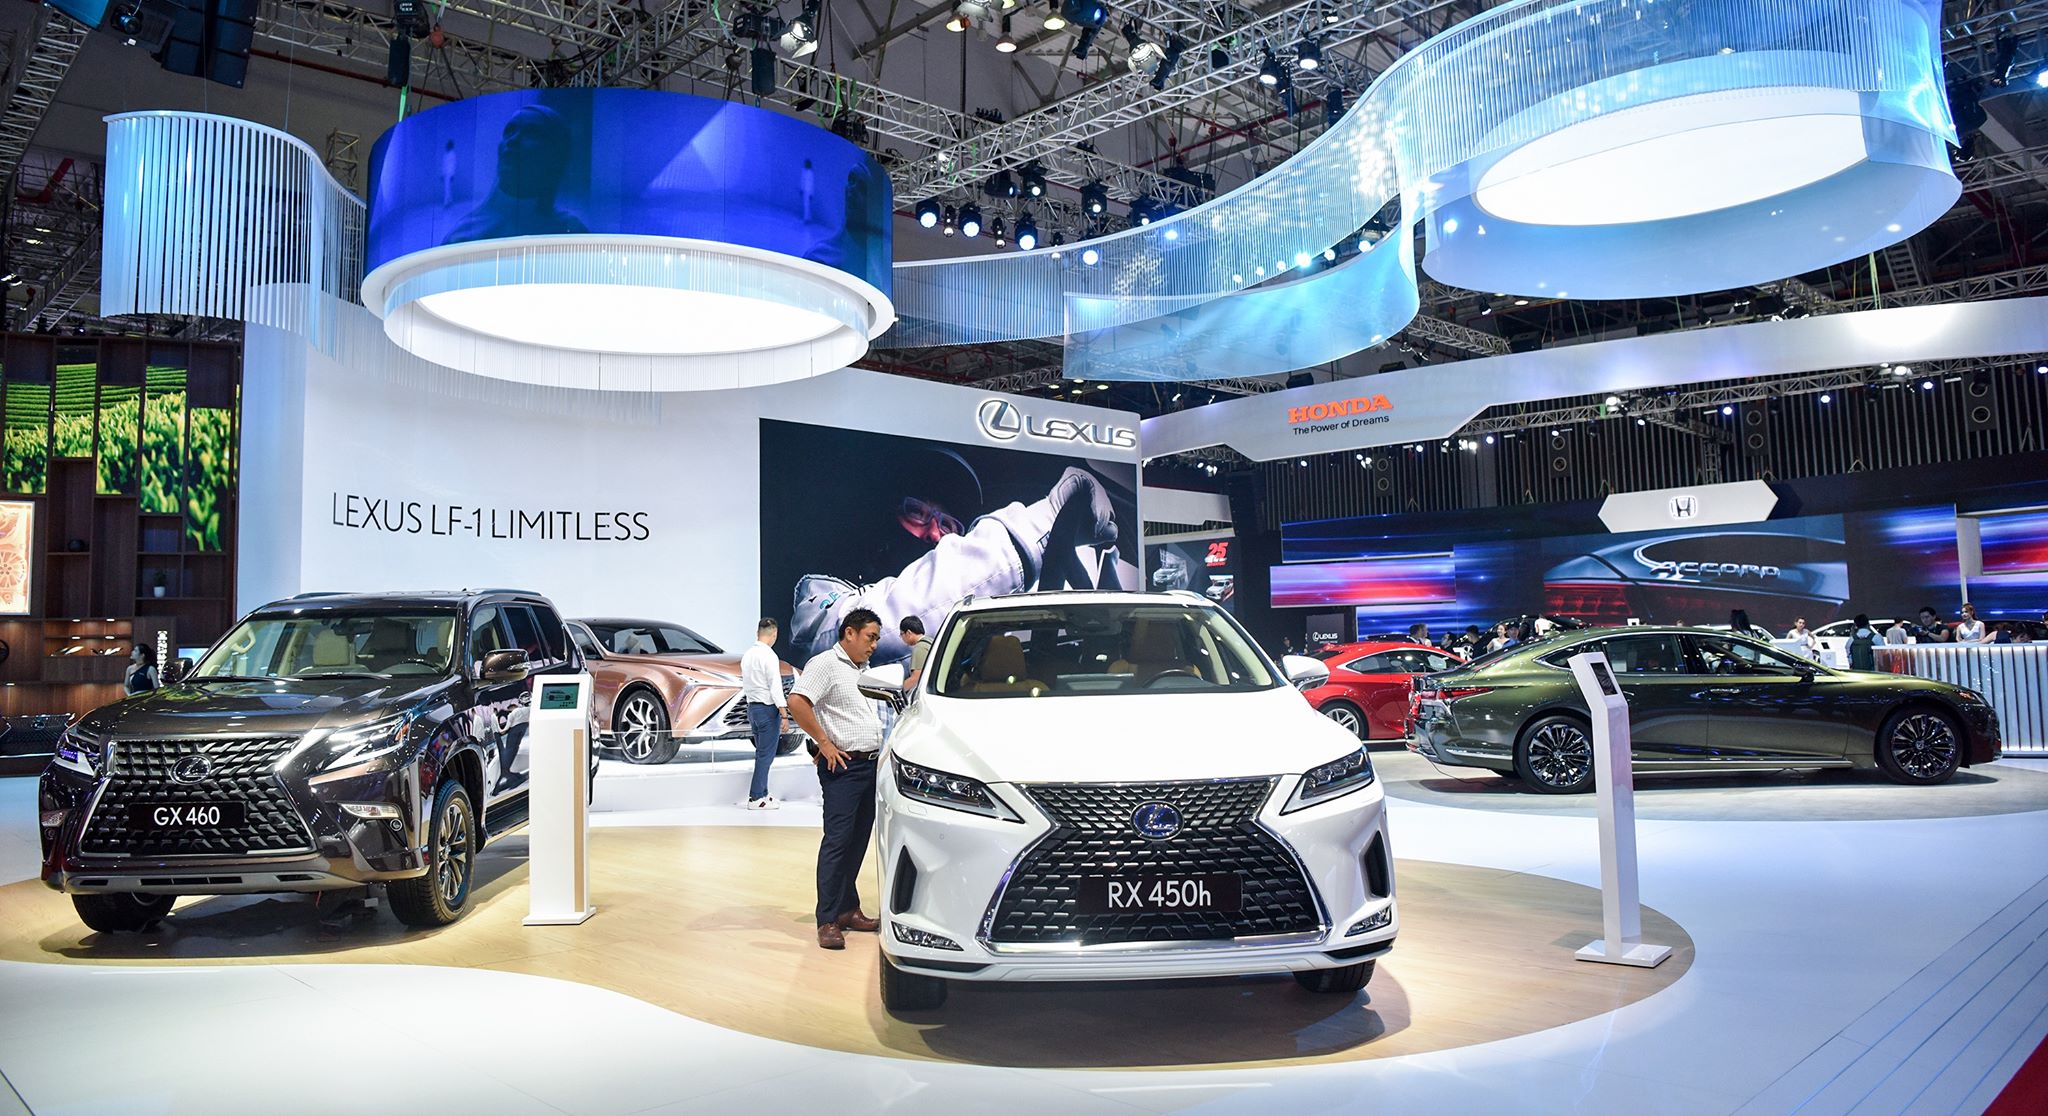 Ngắm xe Lexus vạn người mê tại Triển lãm Ô tô Việt Nam 2019